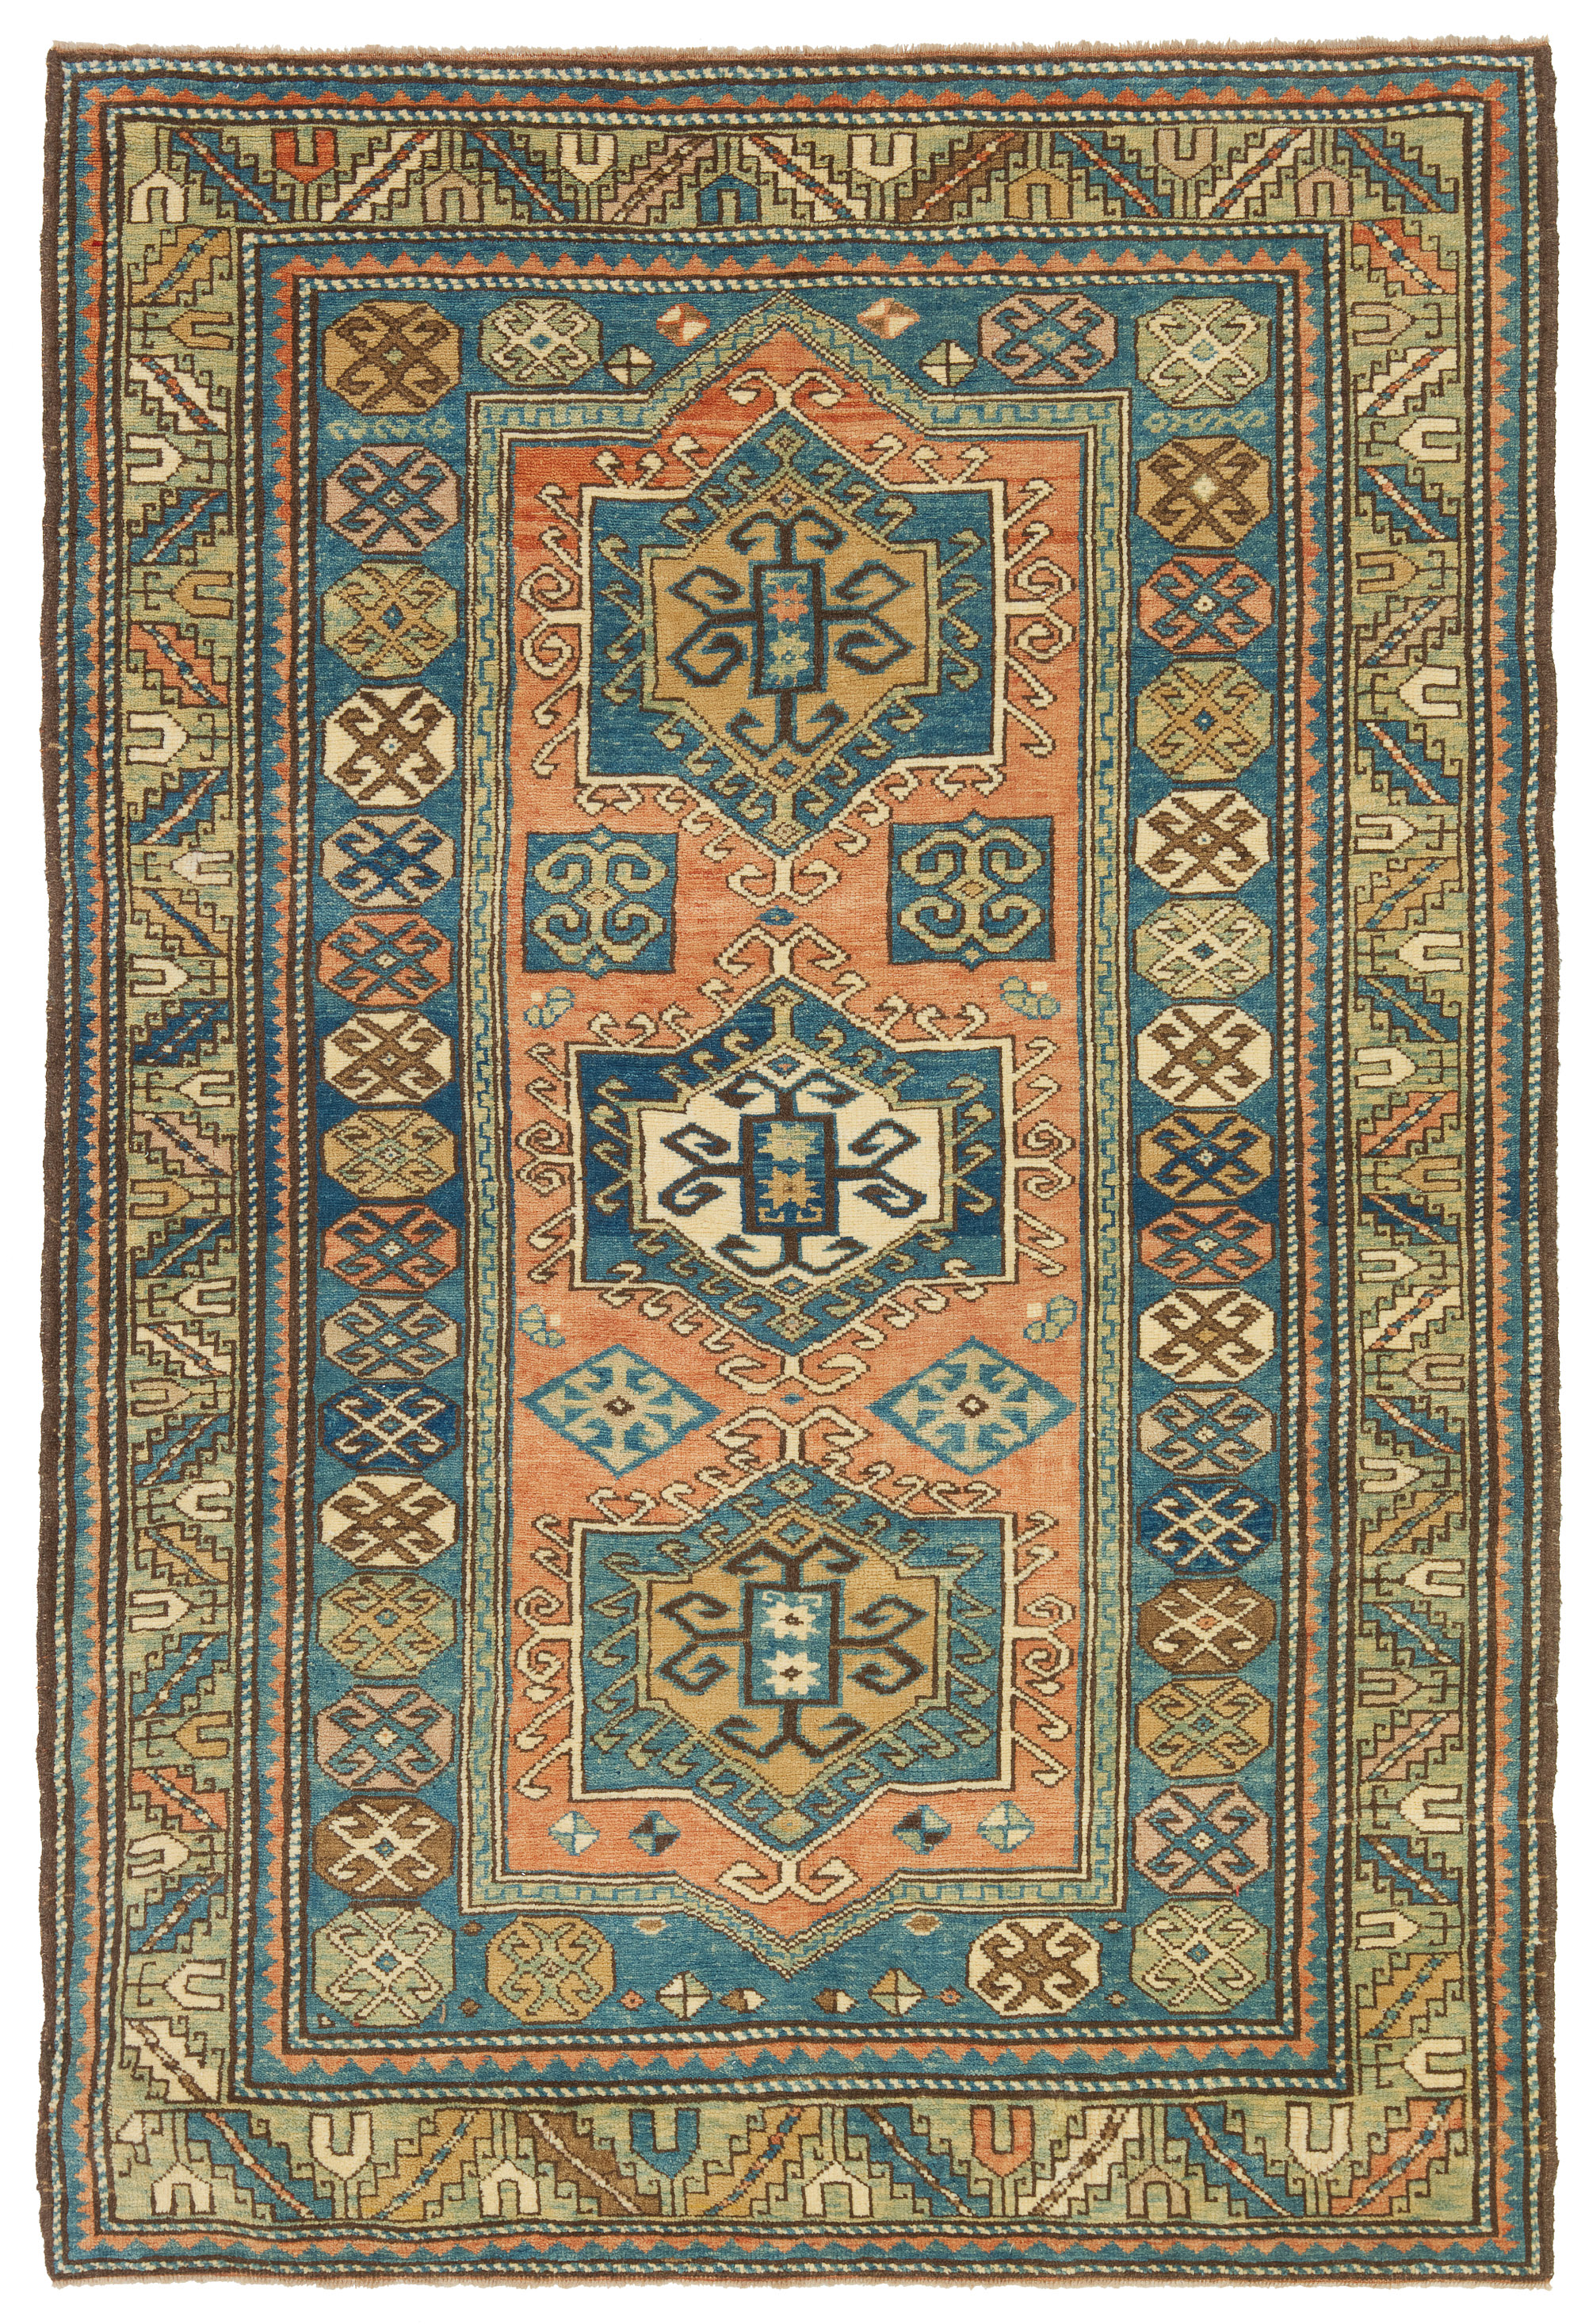 ファクラロ・カザック絨毯 Fachralo Kazak Rug 青山キリムハウス ペルシャ絨毯 トルコ絨毯キリム専門店 C50411